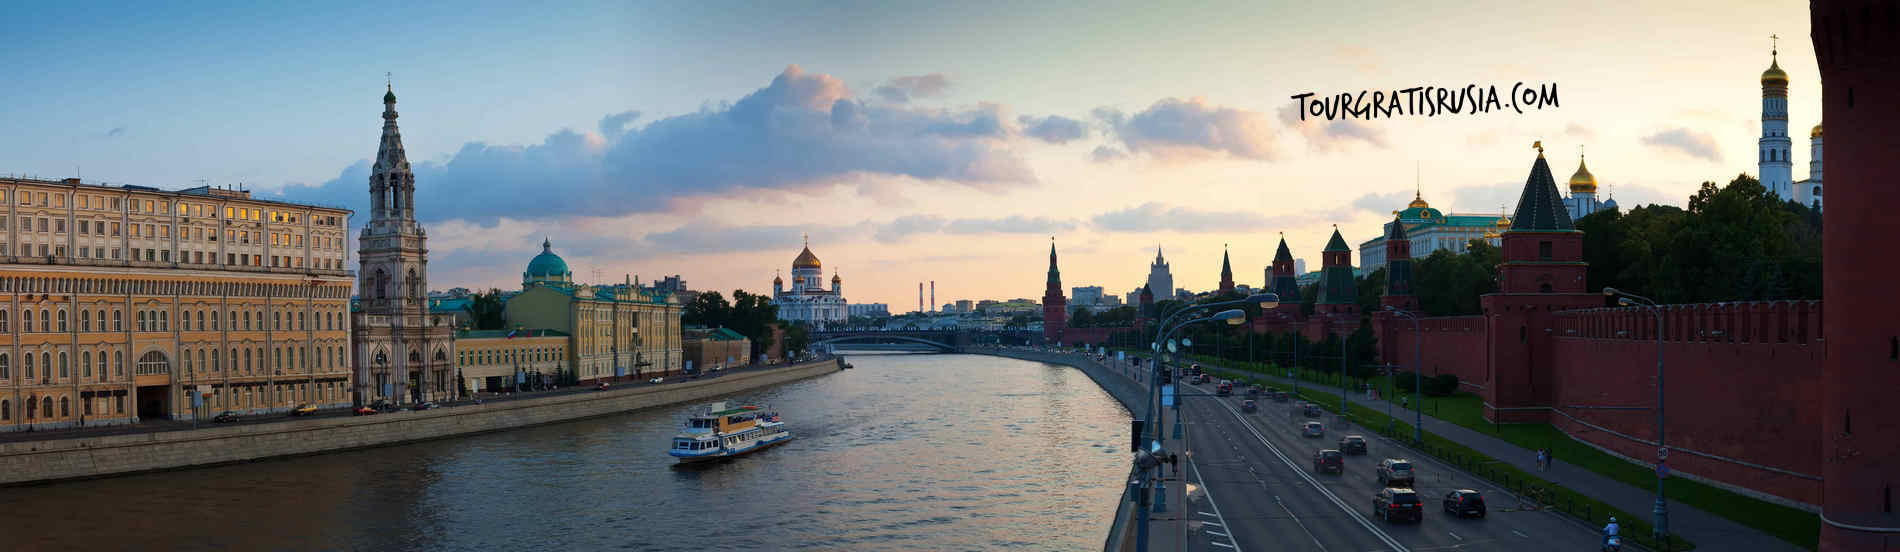 Tour por el rio Moscú